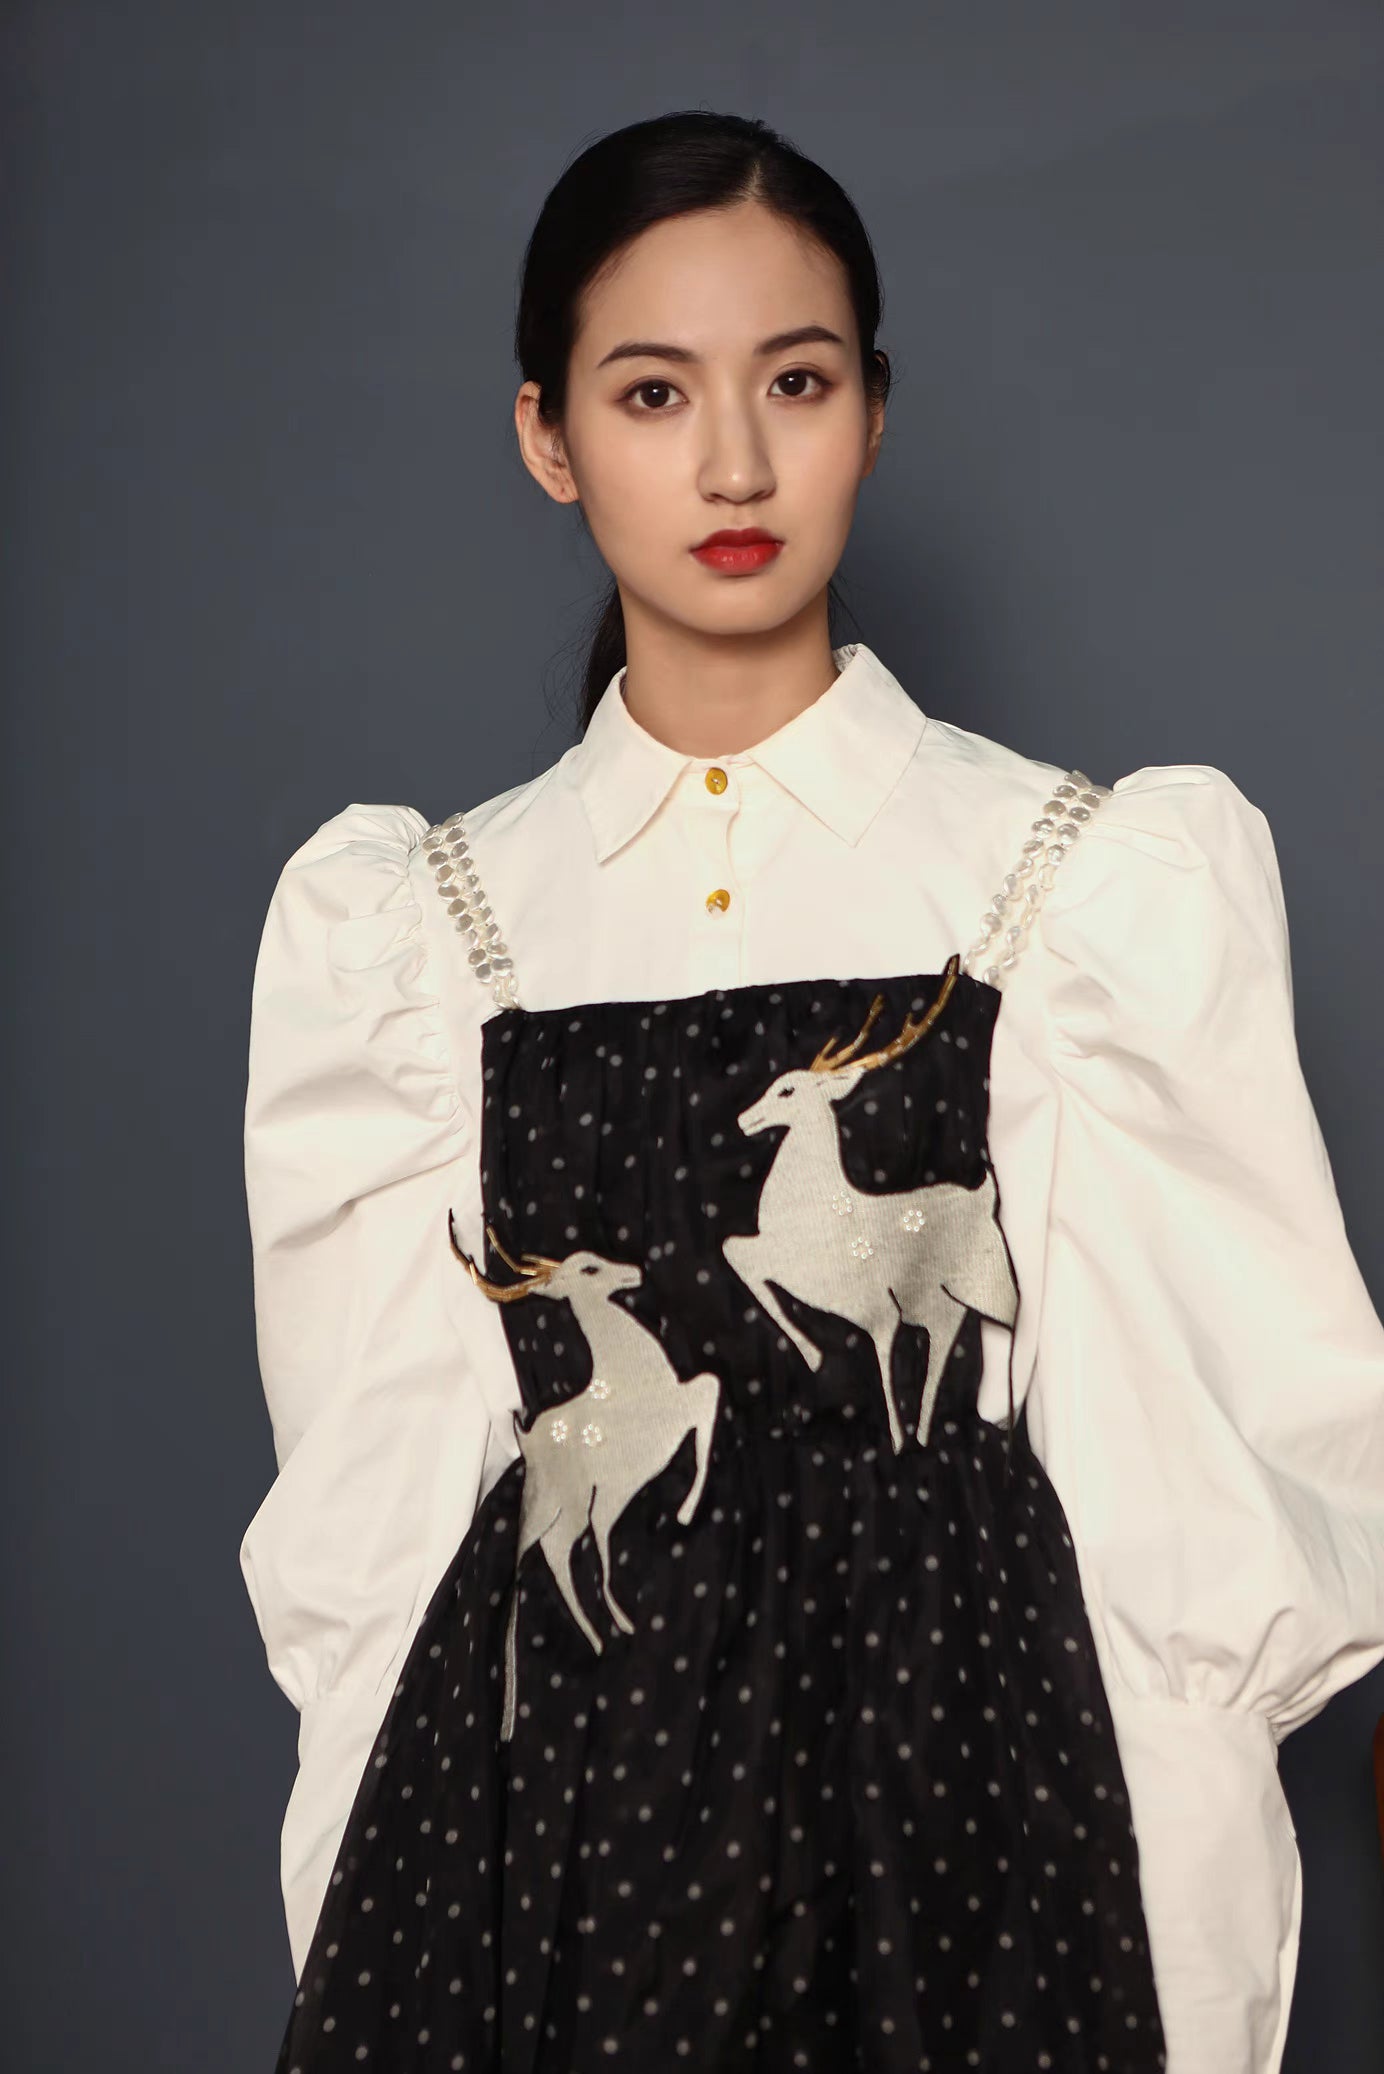 deer embroidered suspender skirt black and white polka dot dress